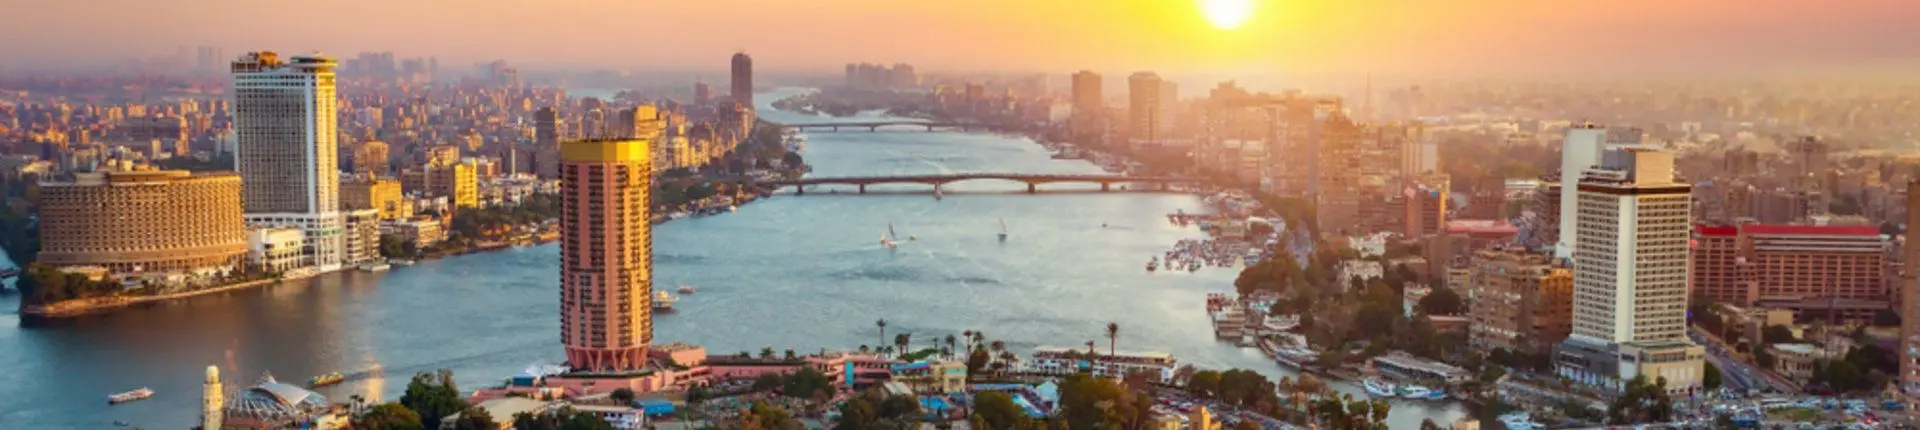 أماكن سياحية في القاهرة